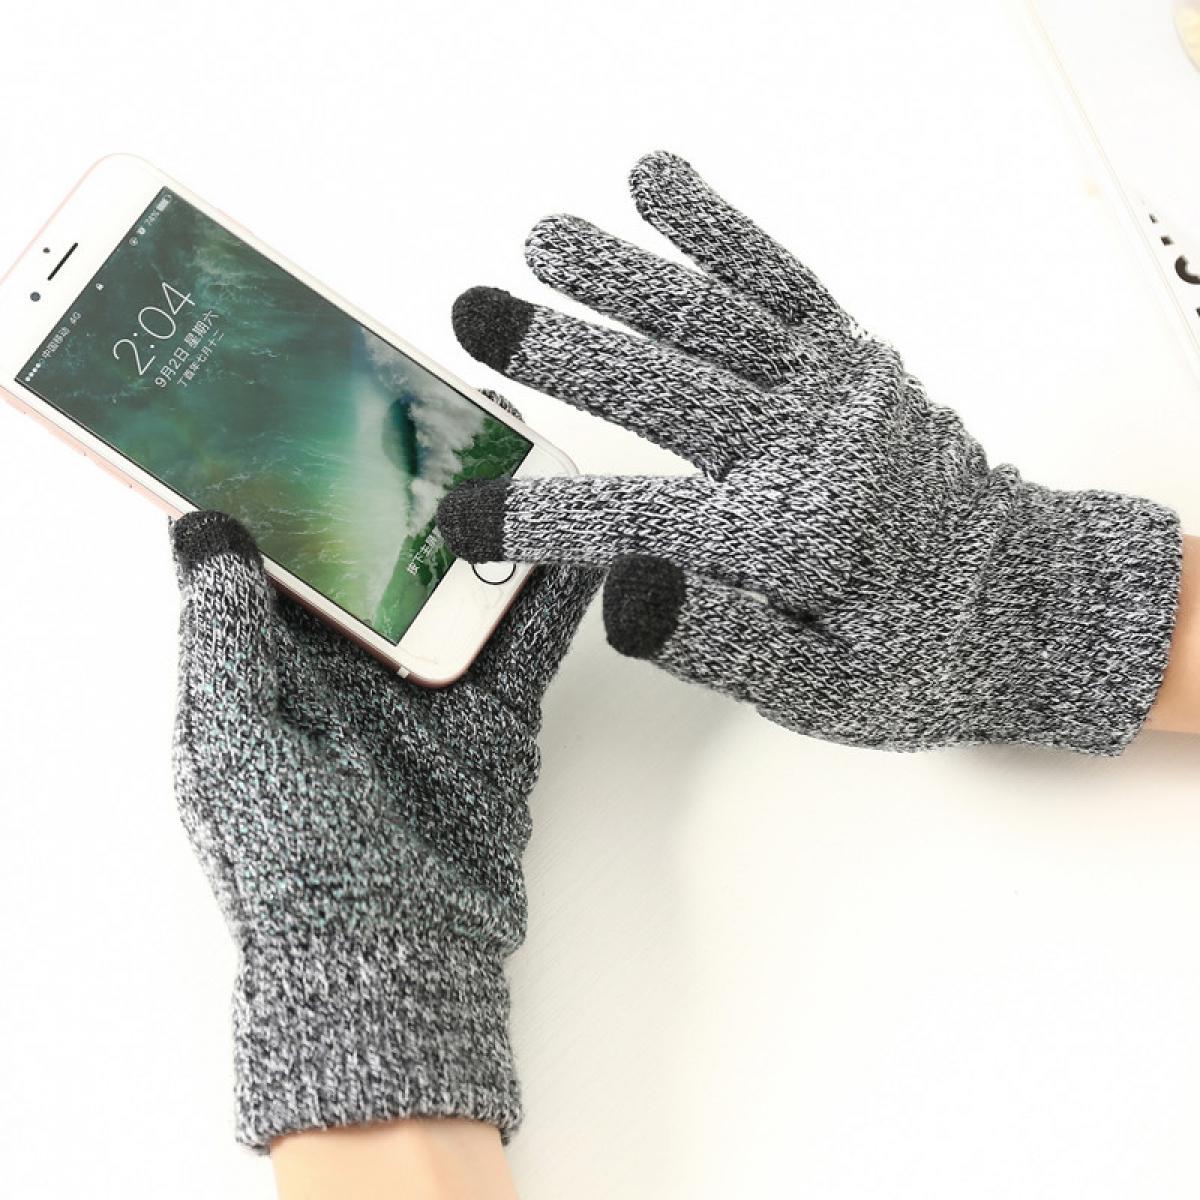 Shot - Gants Homme tactiles pour SAMSUNG Galaxy NOTE 10+ Smartphone Taille M 3 doigts Hiver (GRIS) - Autres accessoires smartphone